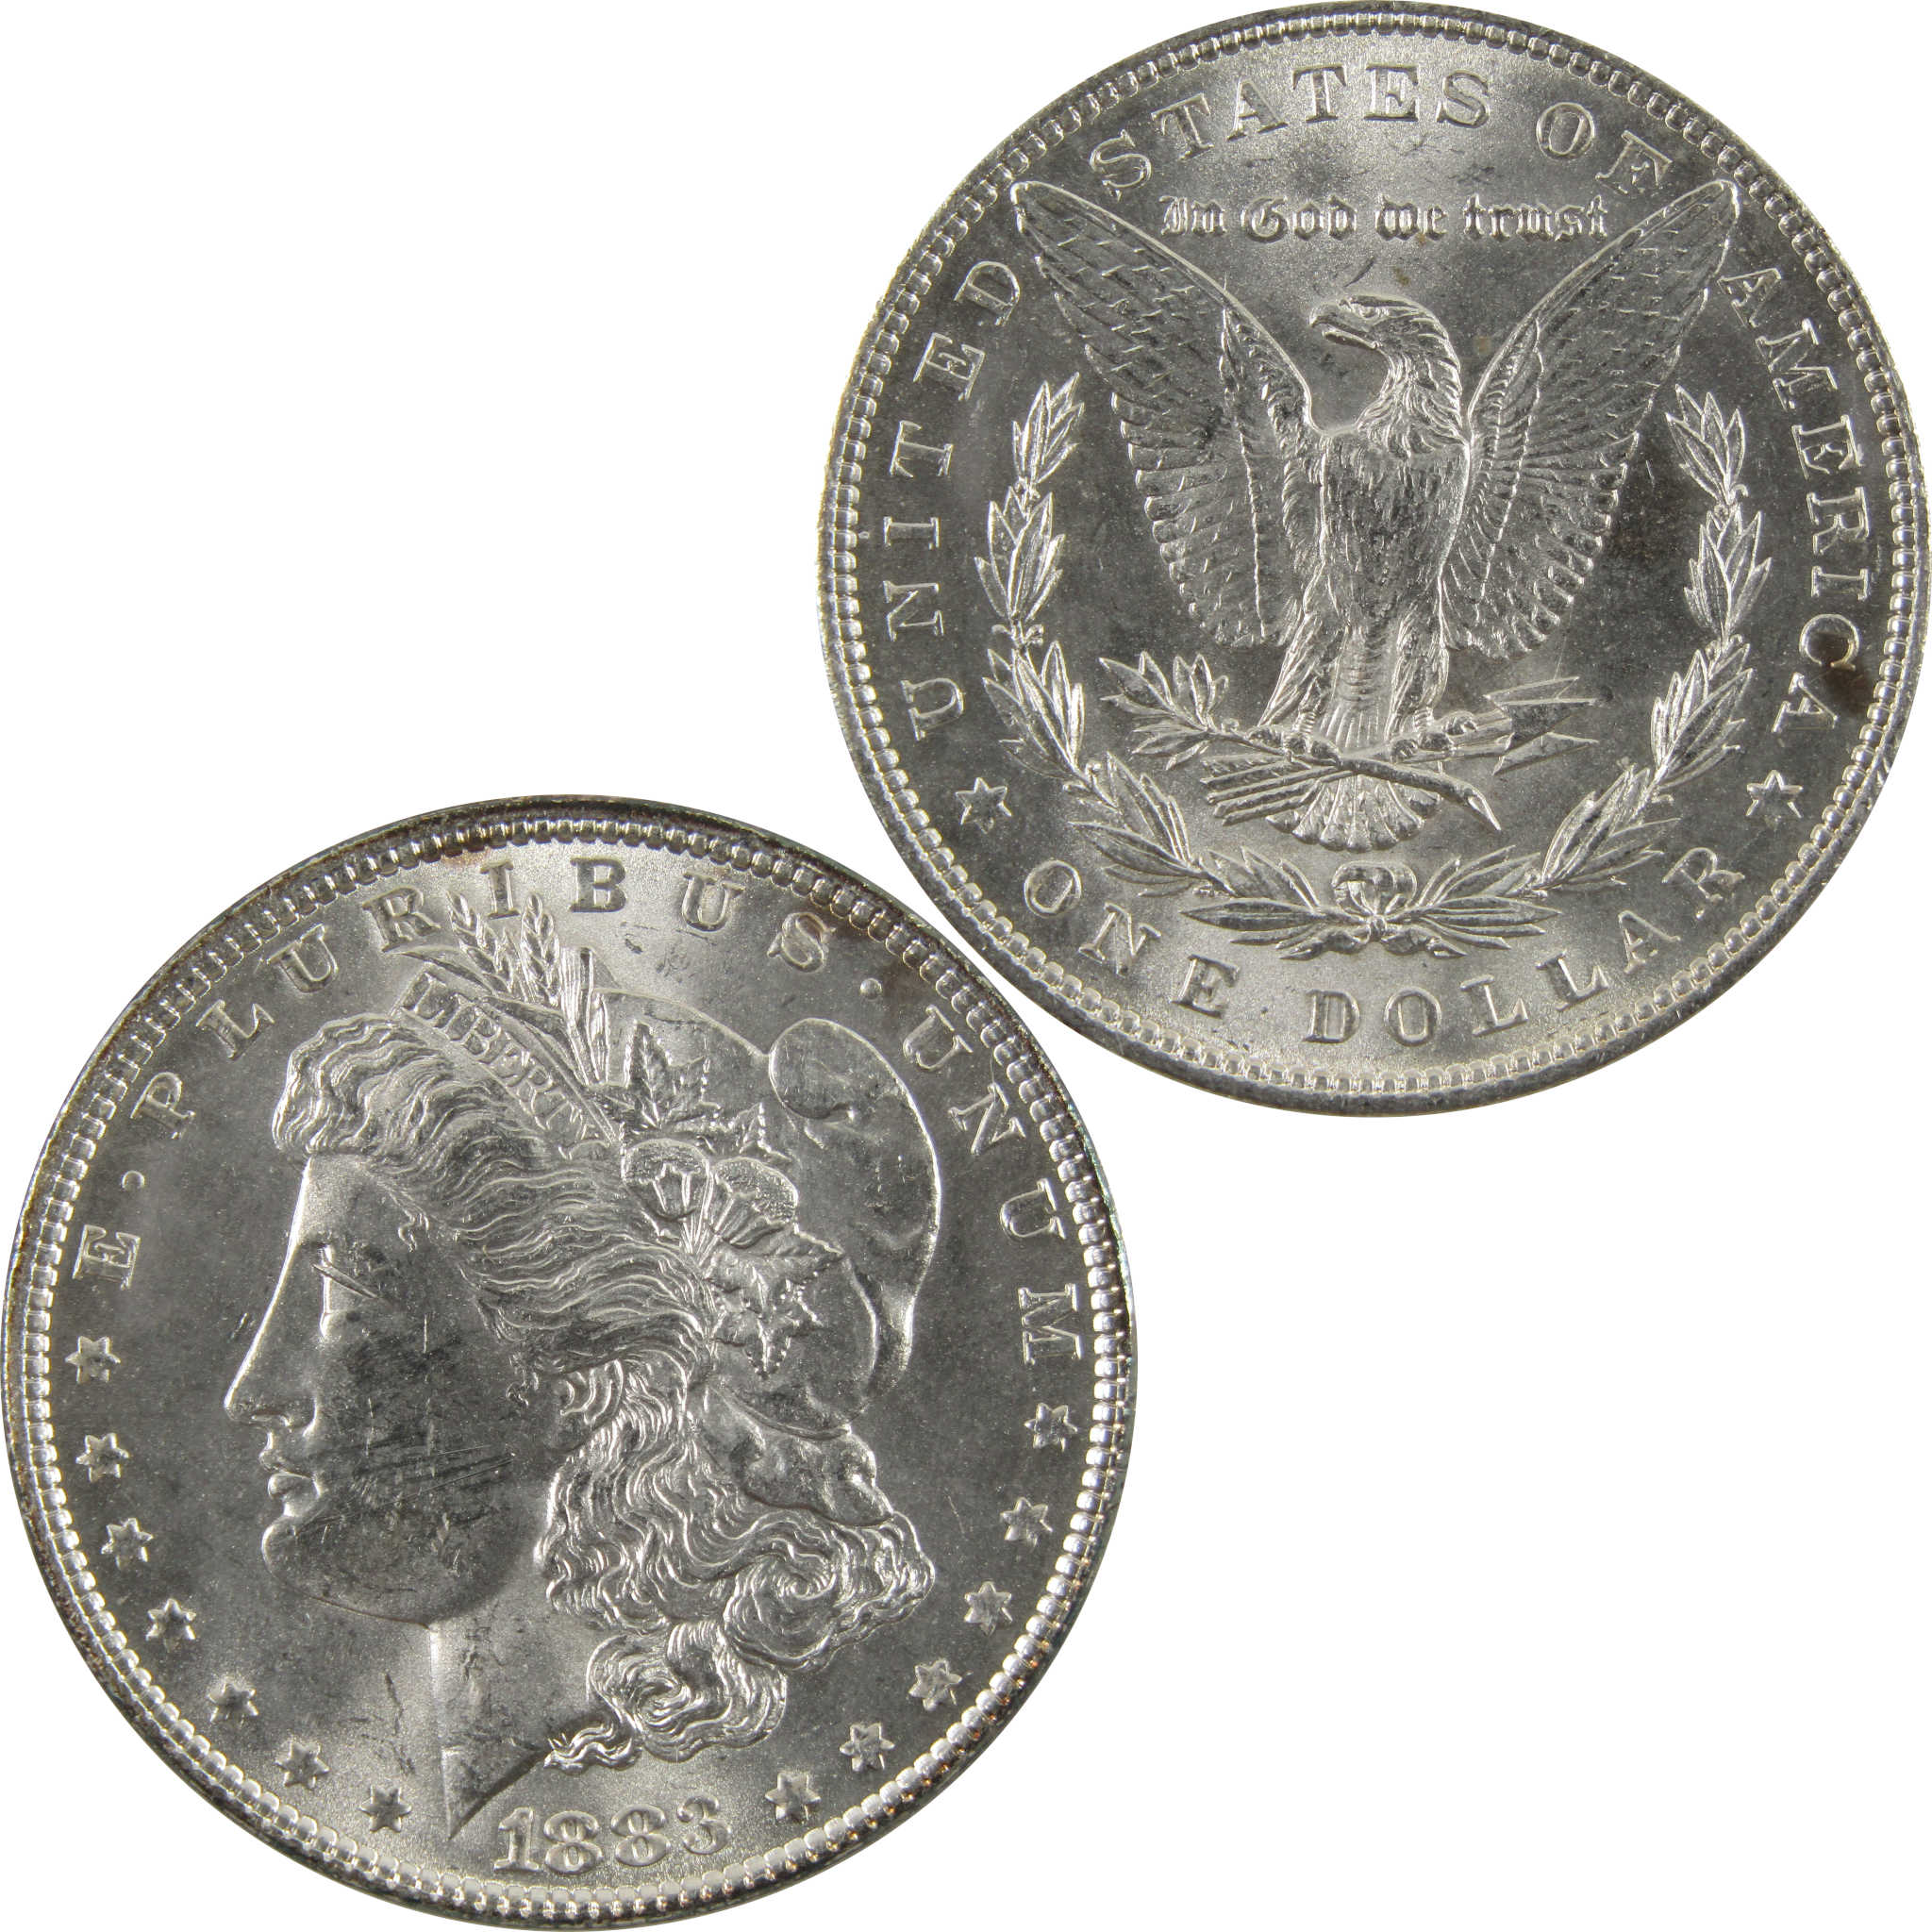 1883 Morgan Dollar BU Uncirculated 90% Silver $1 Coin SKU:CPC4864 - Morgan coin - Morgan silver dollar - Morgan silver dollar for sale - Profile Coins &amp; Collectibles